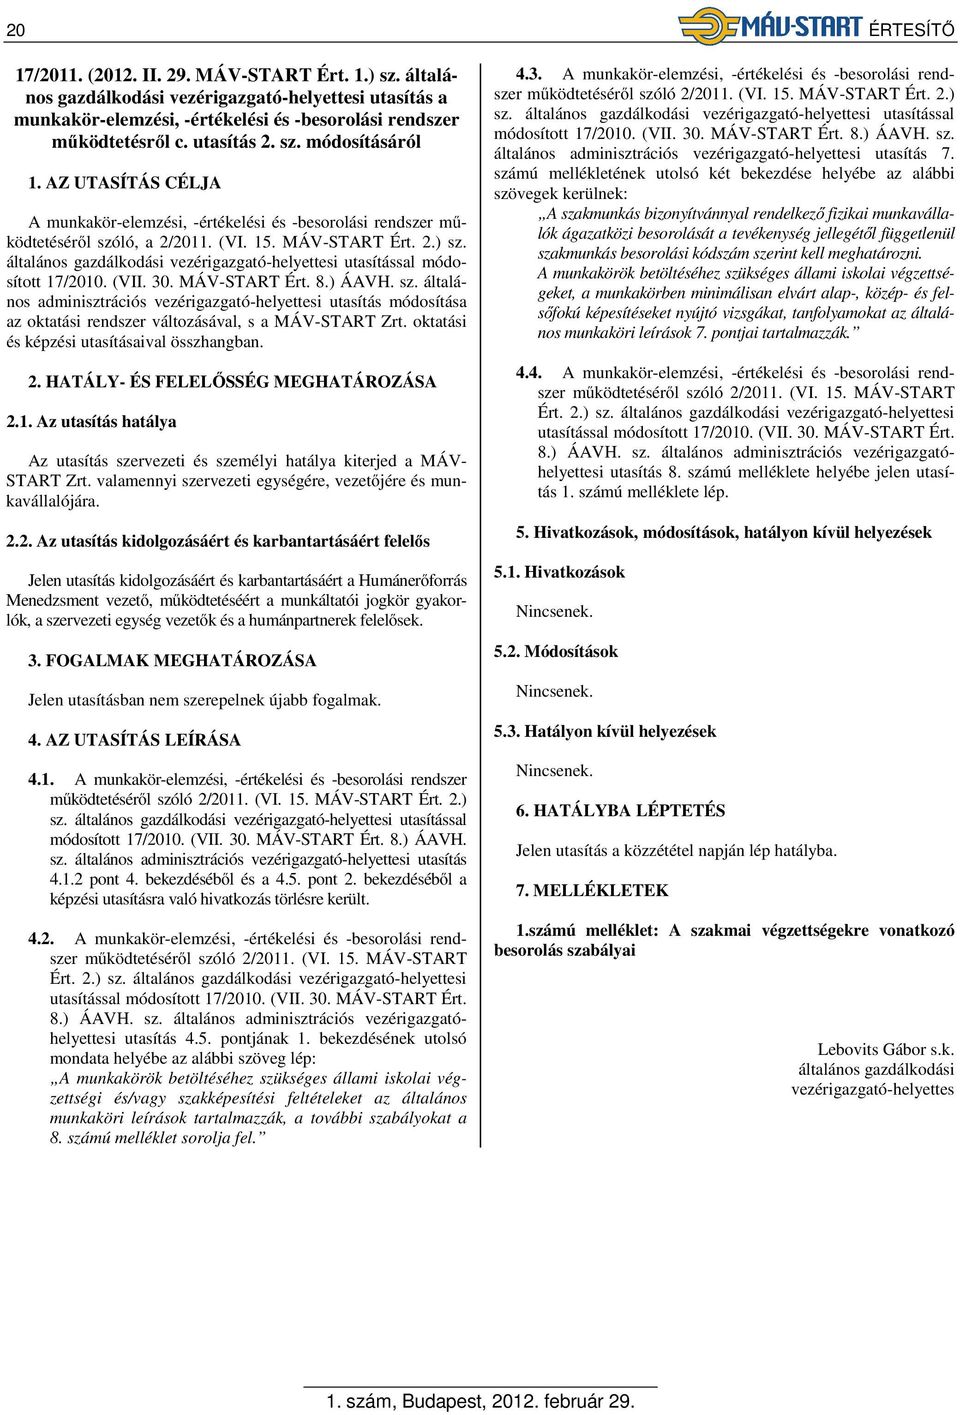 általános gazdálkodási vezérigazgató-helyettesi utasítással módosított 17/2010. (VII. 30. MÁV-START Ért. 8.) ÁAVH. sz.